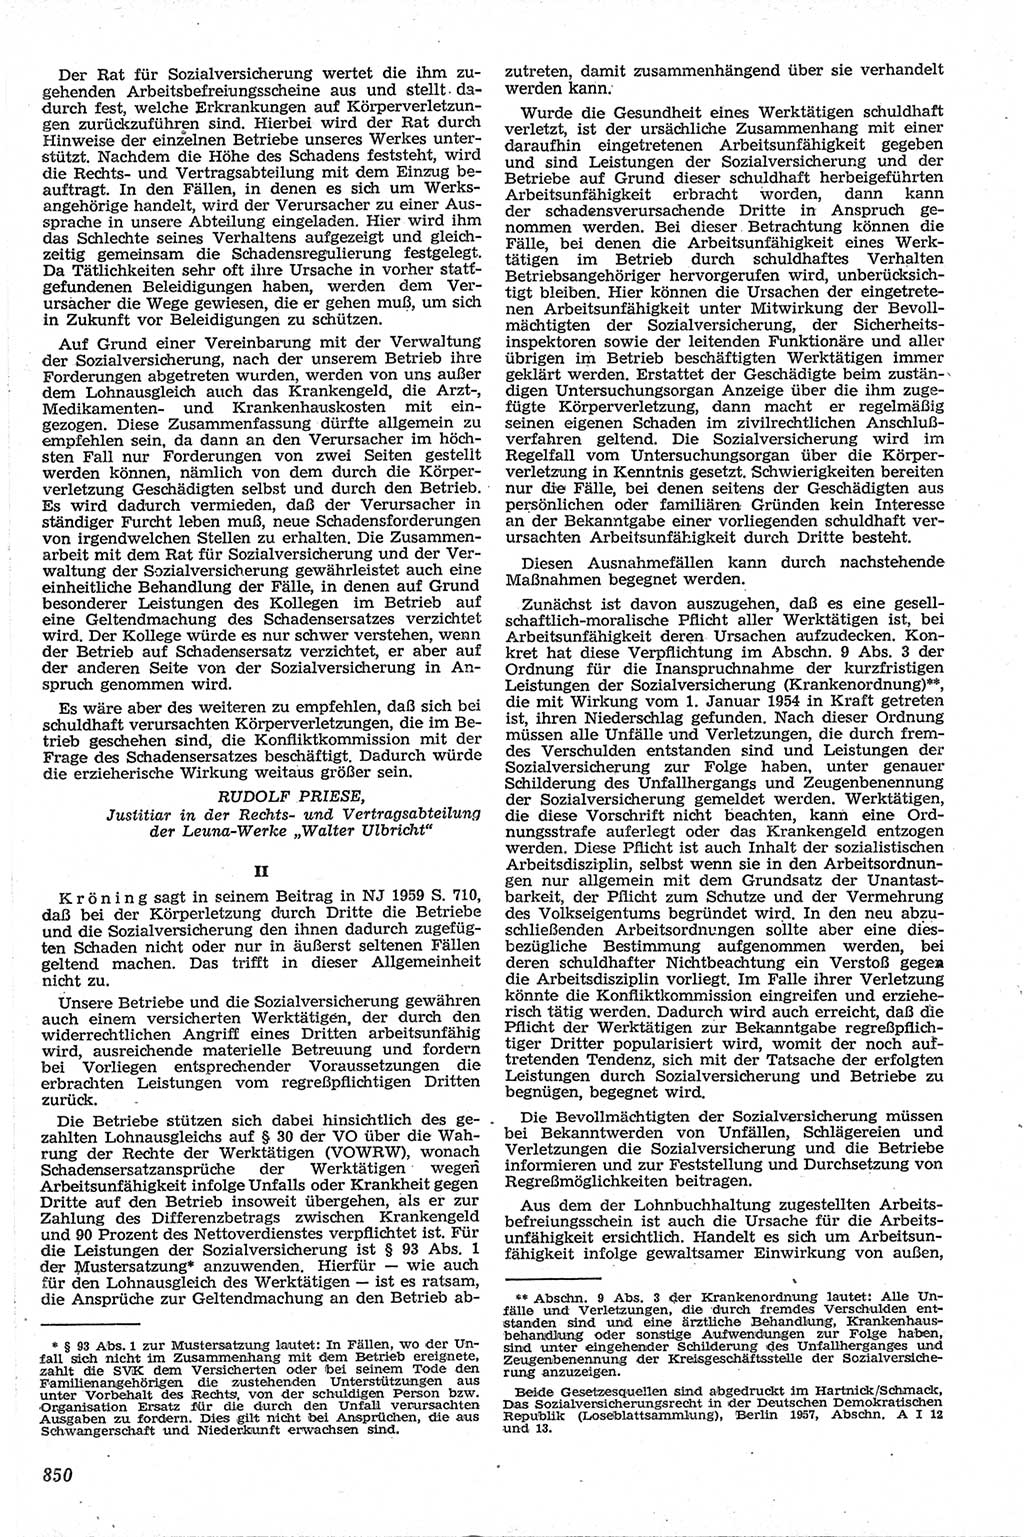 Neue Justiz (NJ), Zeitschrift für Recht und Rechtswissenschaft [Deutsche Demokratische Republik (DDR)], 13. Jahrgang 1959, Seite 850 (NJ DDR 1959, S. 850)